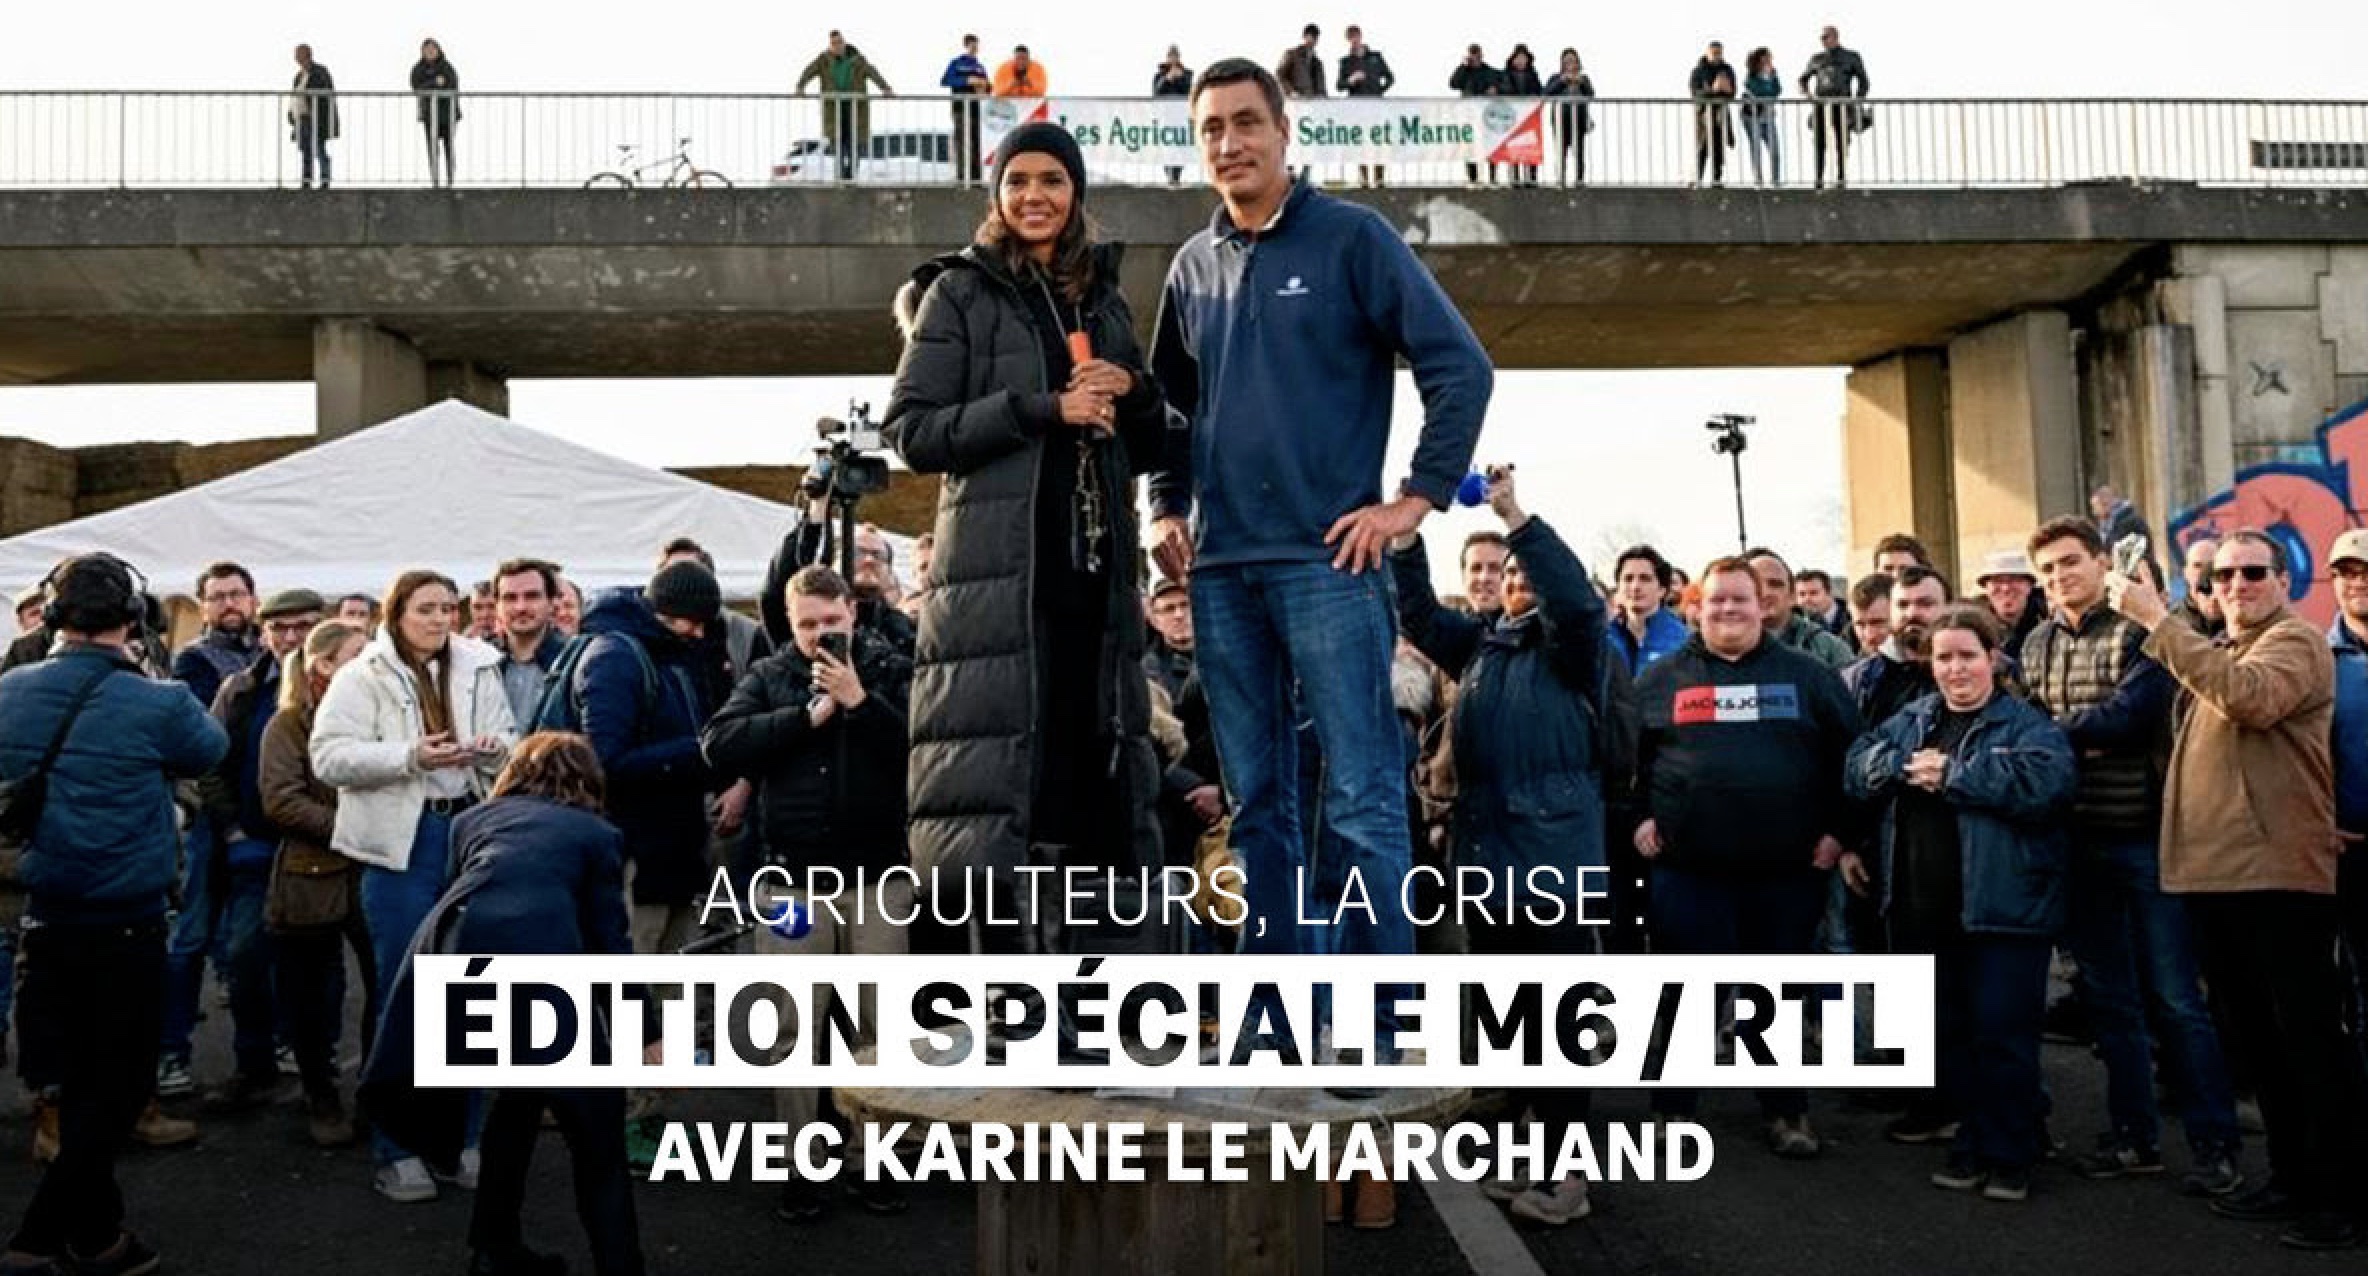 Agriculteurs la crise - M6 - Karine Le Marchand -